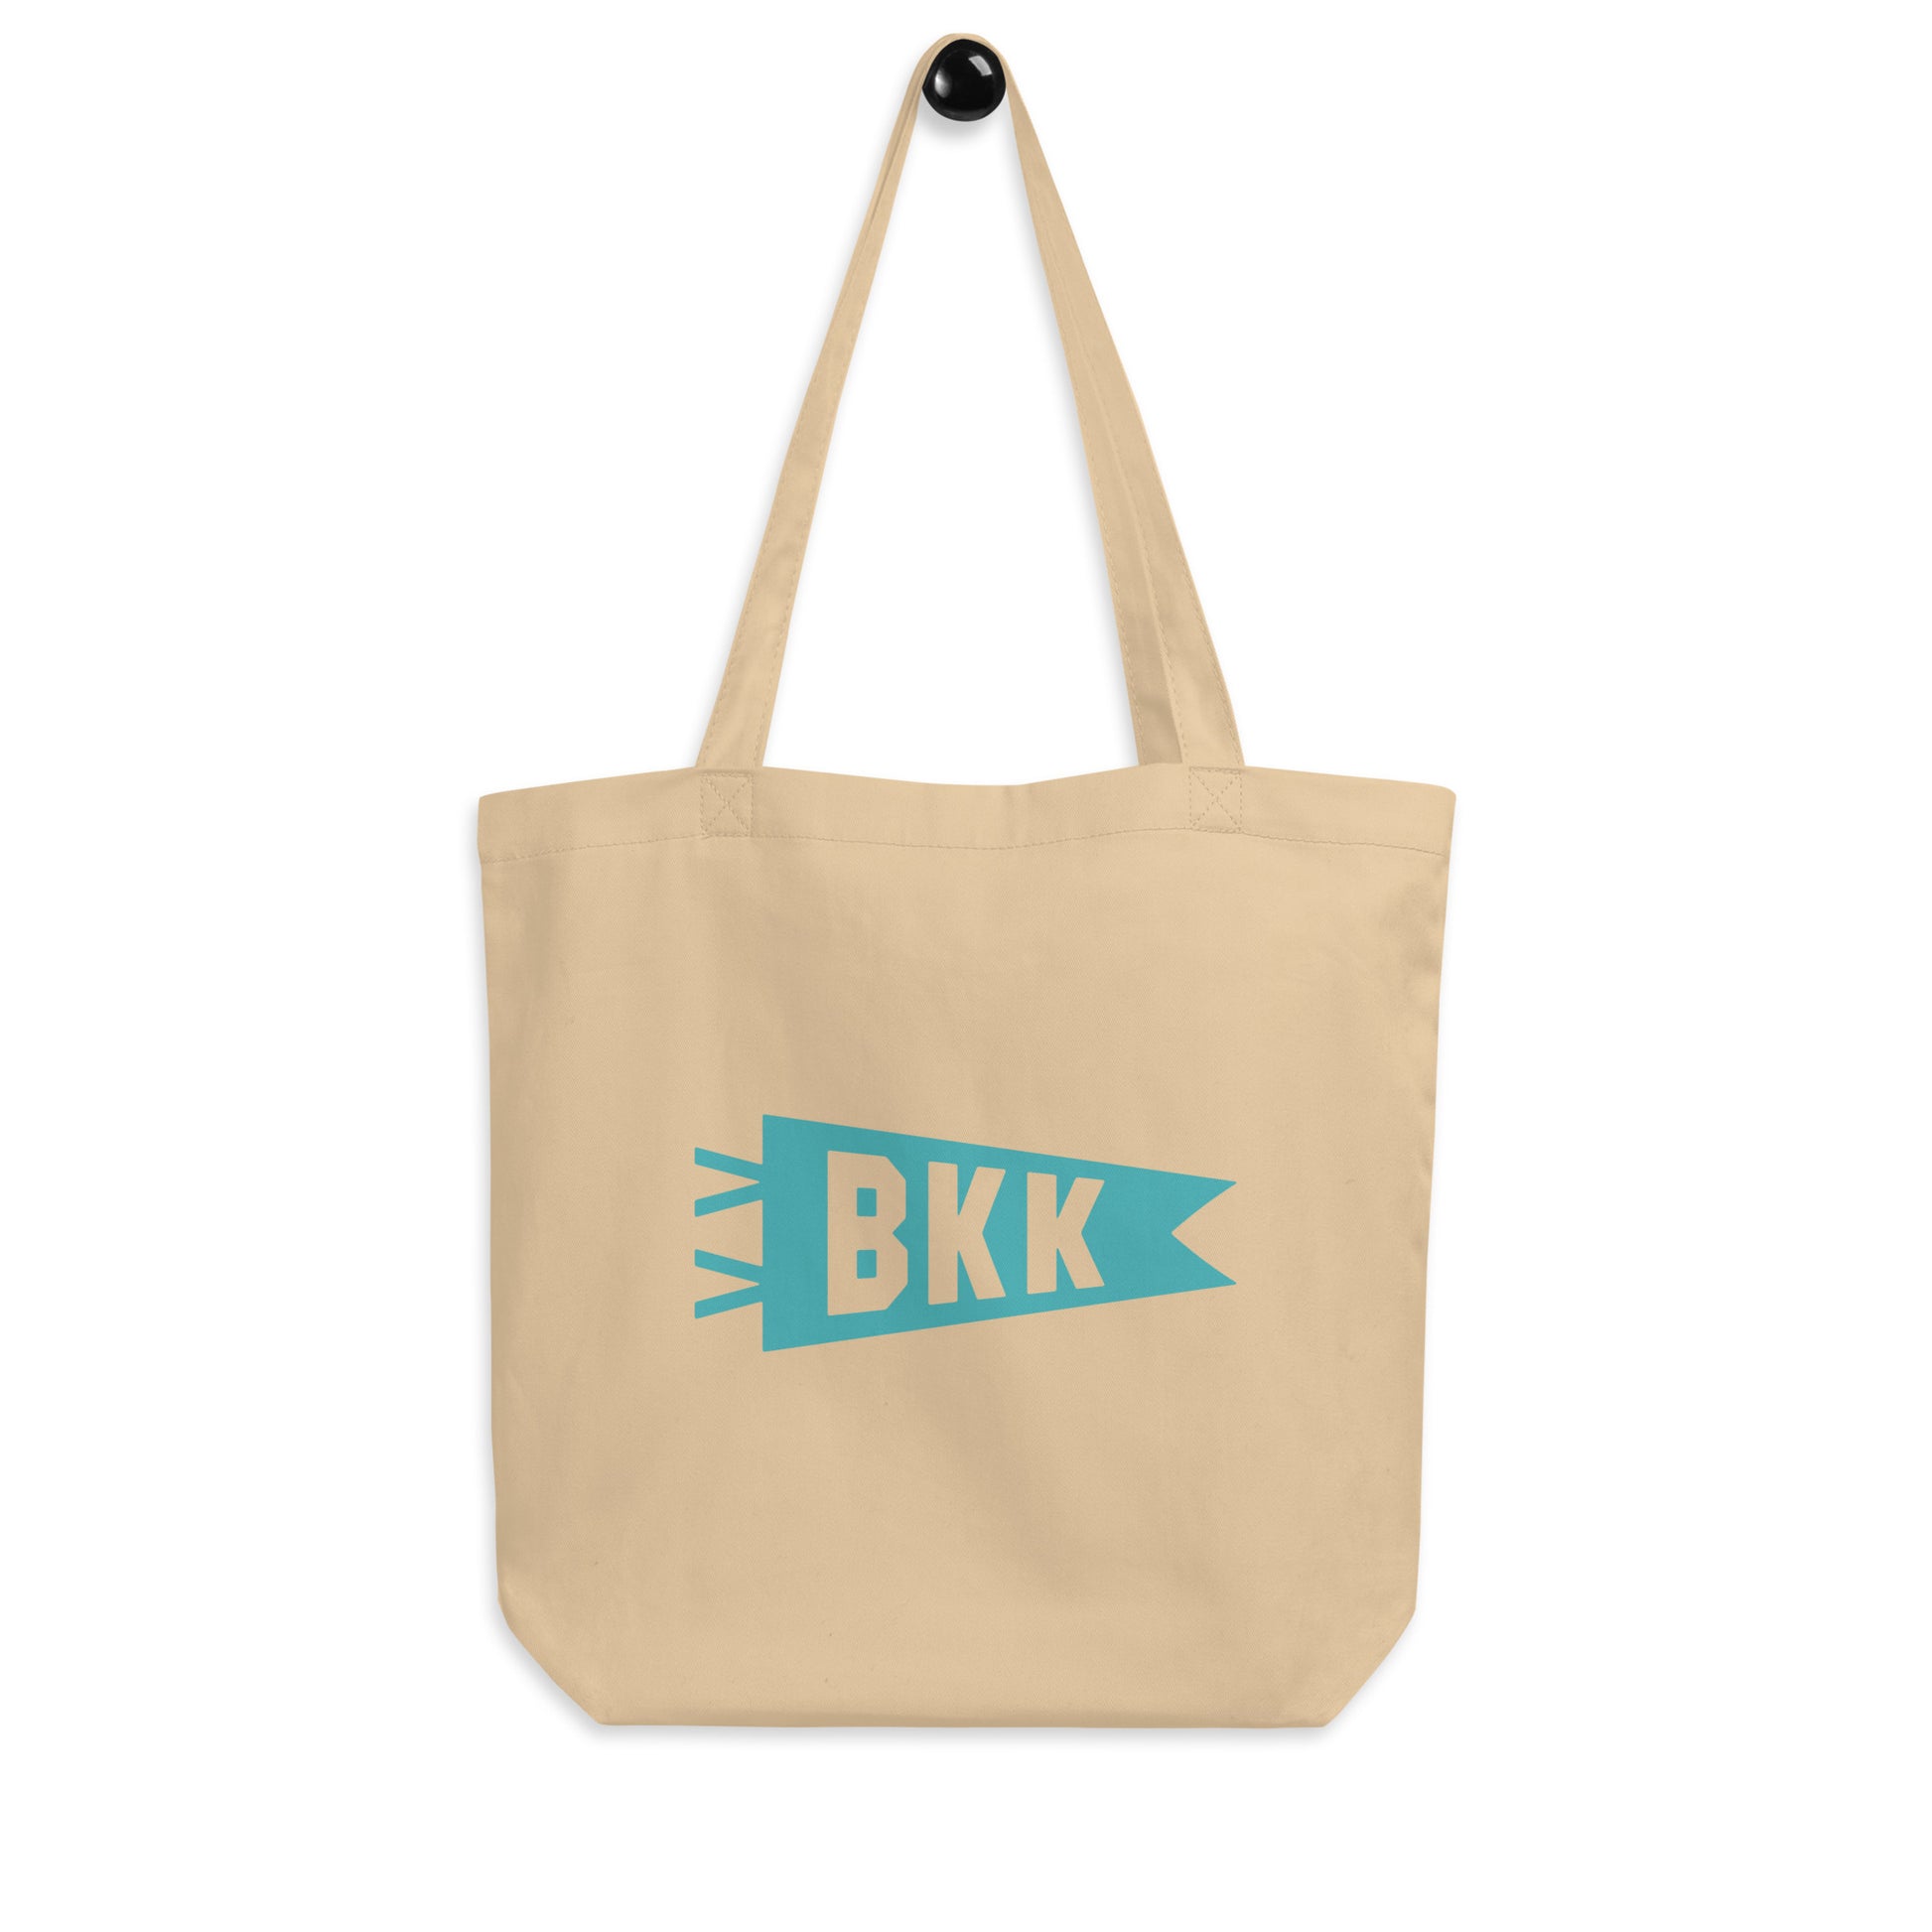 Cool Travel Gift Organic Tote Bag - Viking Blue • BKK Bangkok • YHM Designs - Image 04